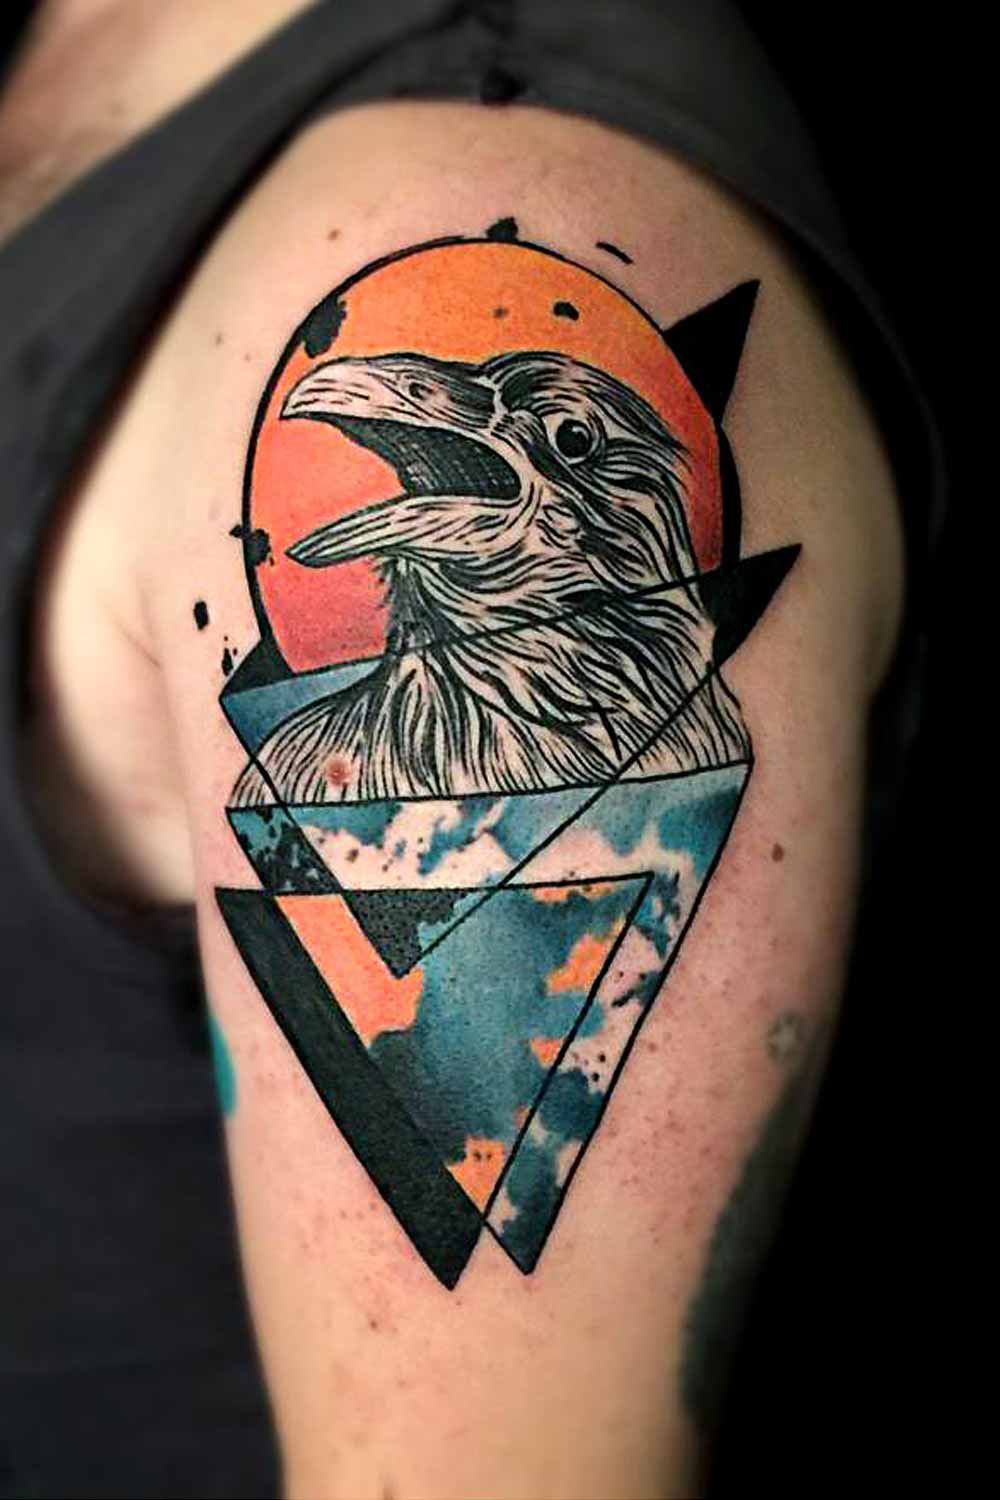 Crow Tattoo for Men #tattoosformen #tattoosmen #besttattoos #tattoo